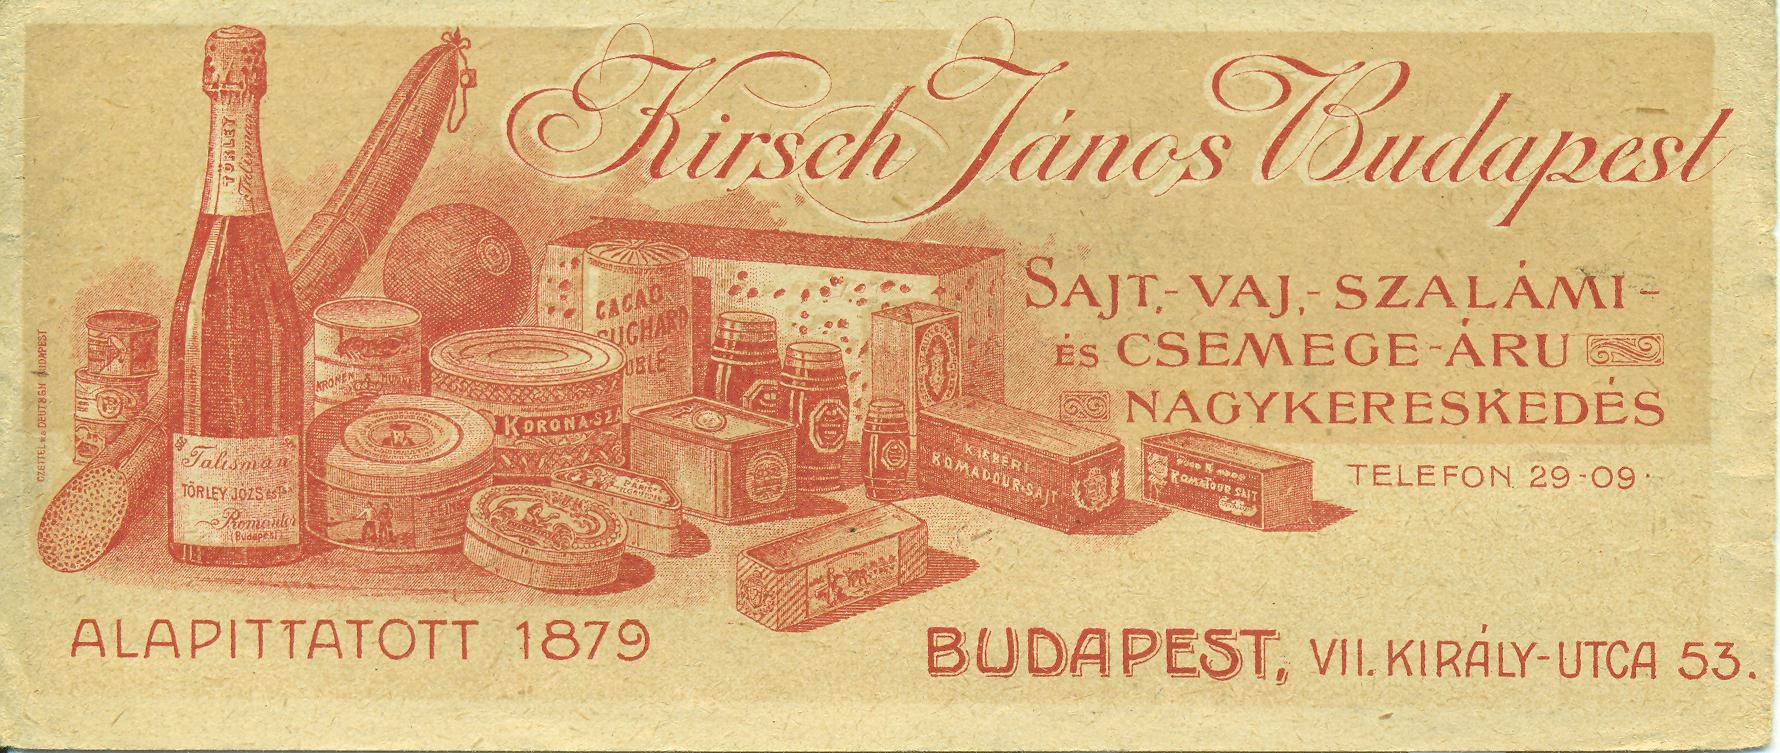 Kirsch János Sajt-, -Vaj, - Szalámi és Csemege - áru Nagykereskedése (Magyar Kereskedelmi és Vendéglátóipari Múzeum CC BY-NC-SA)